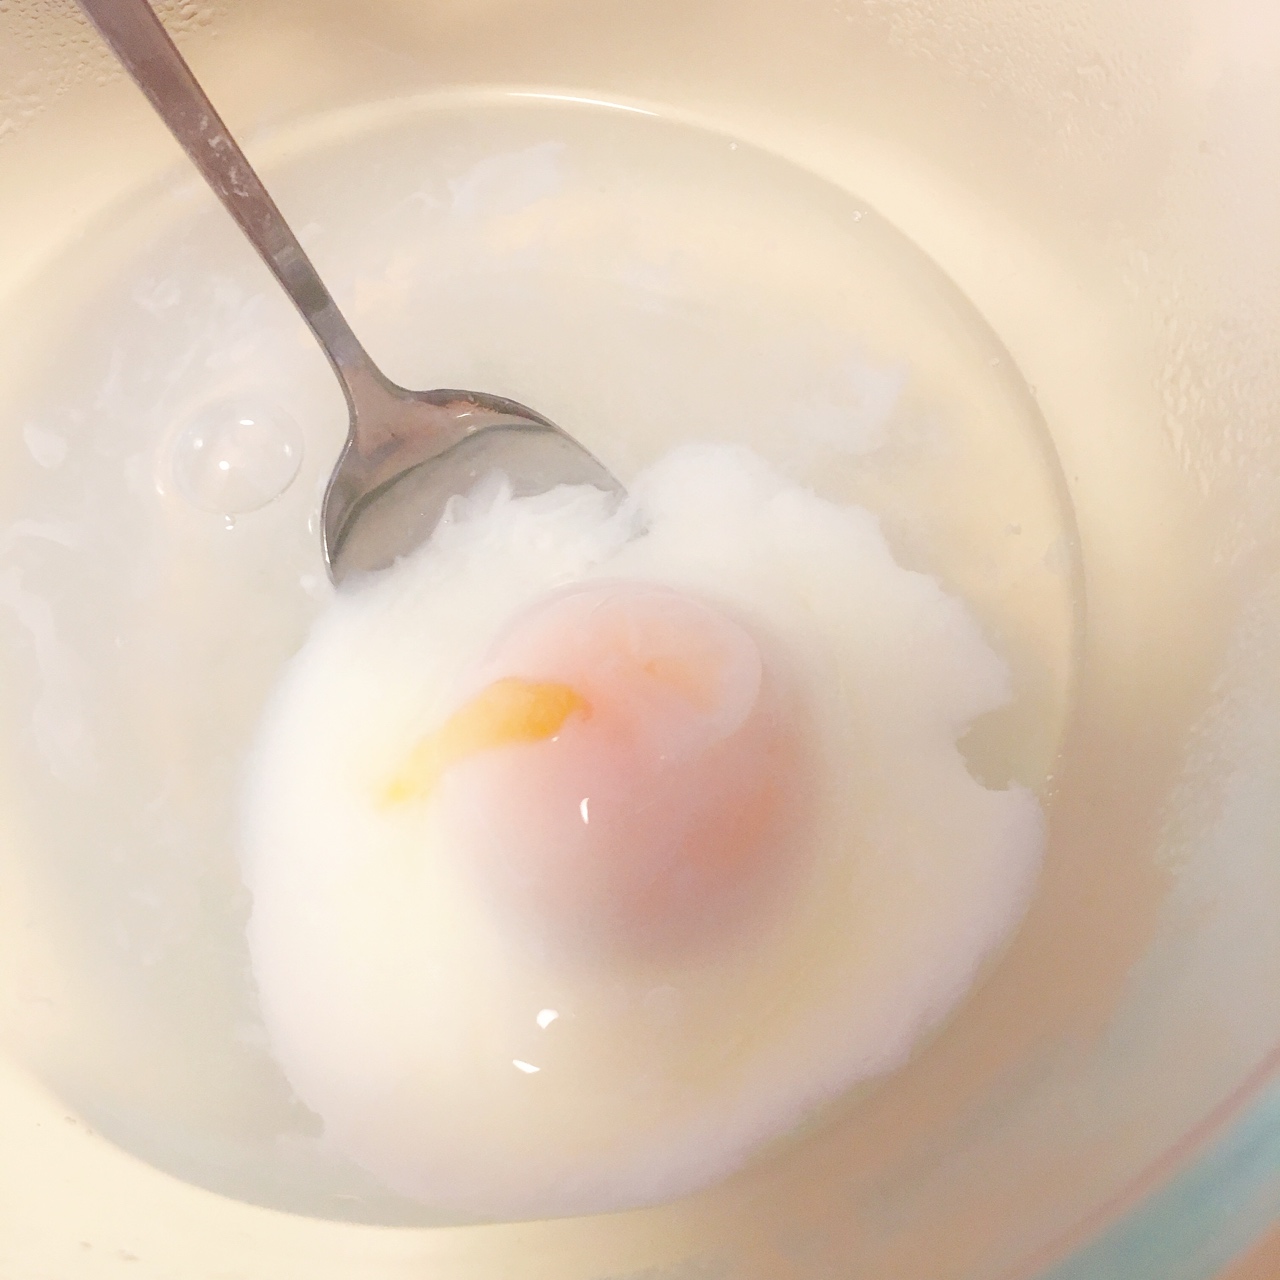 水煮荷包蛋 the perfect poached egg